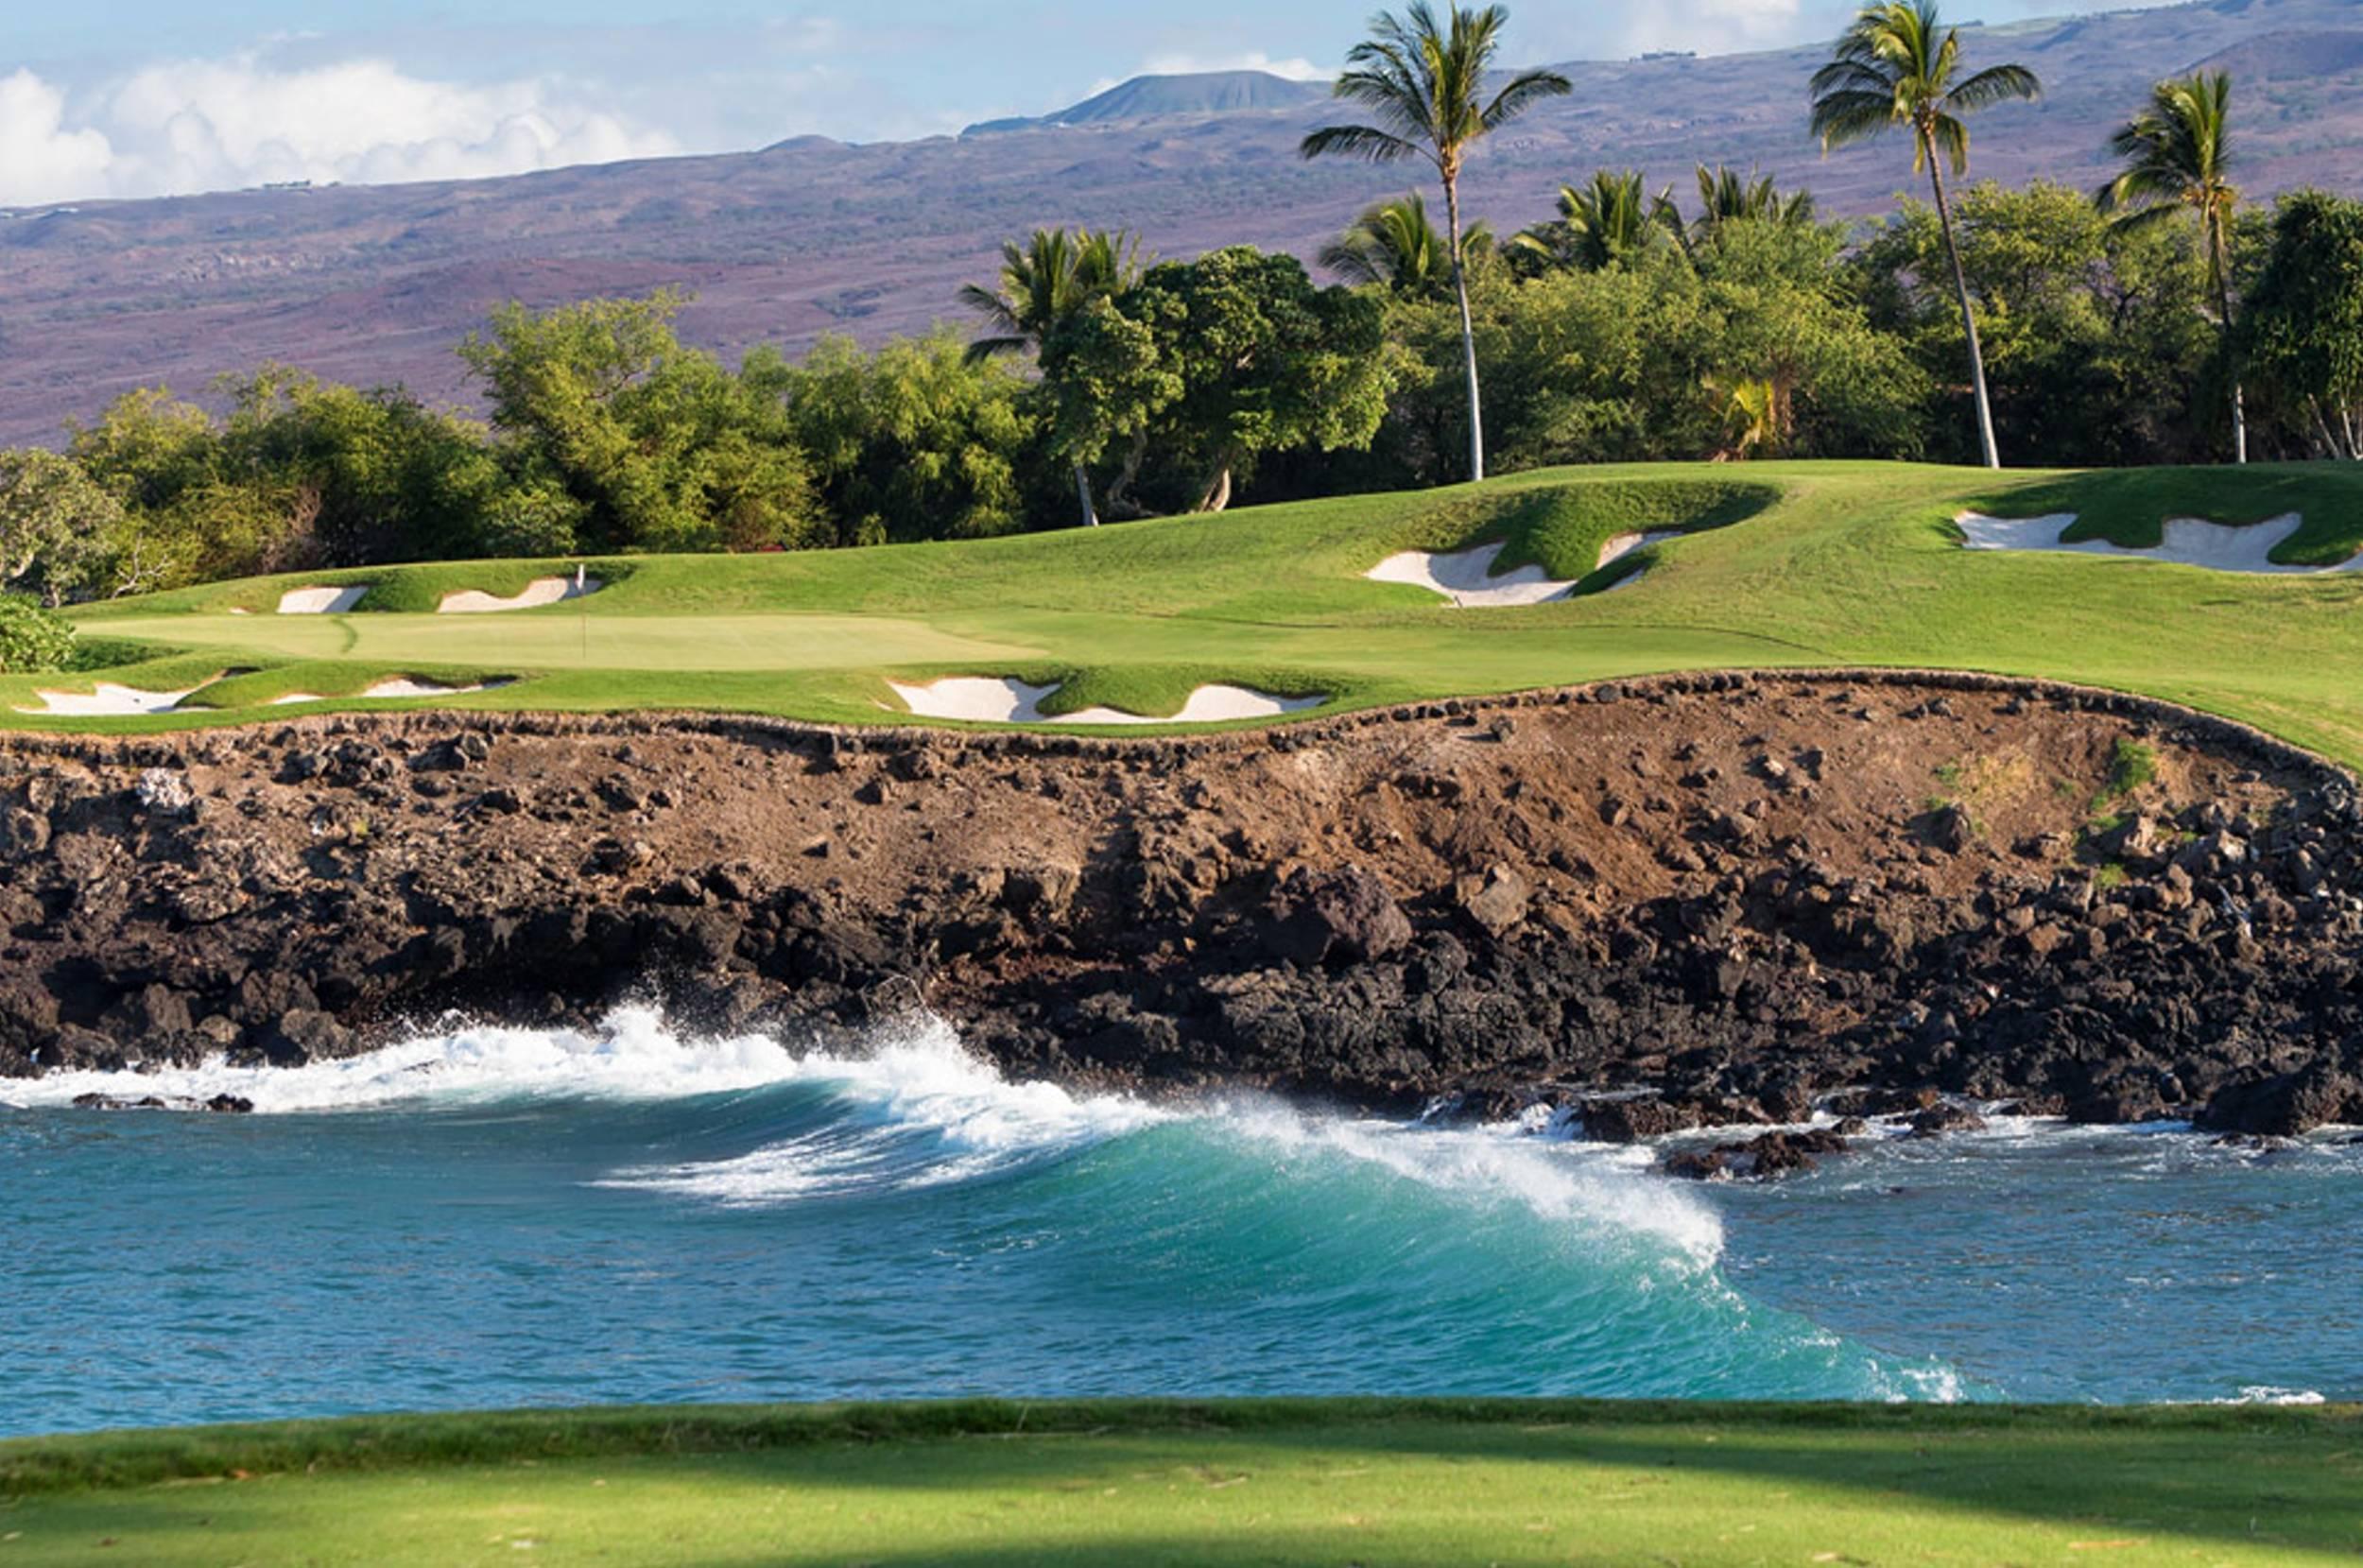 Hawaii Beach Golf Course - 4k Golf Course Backgrounds - 2500x1659 Wallpaper  